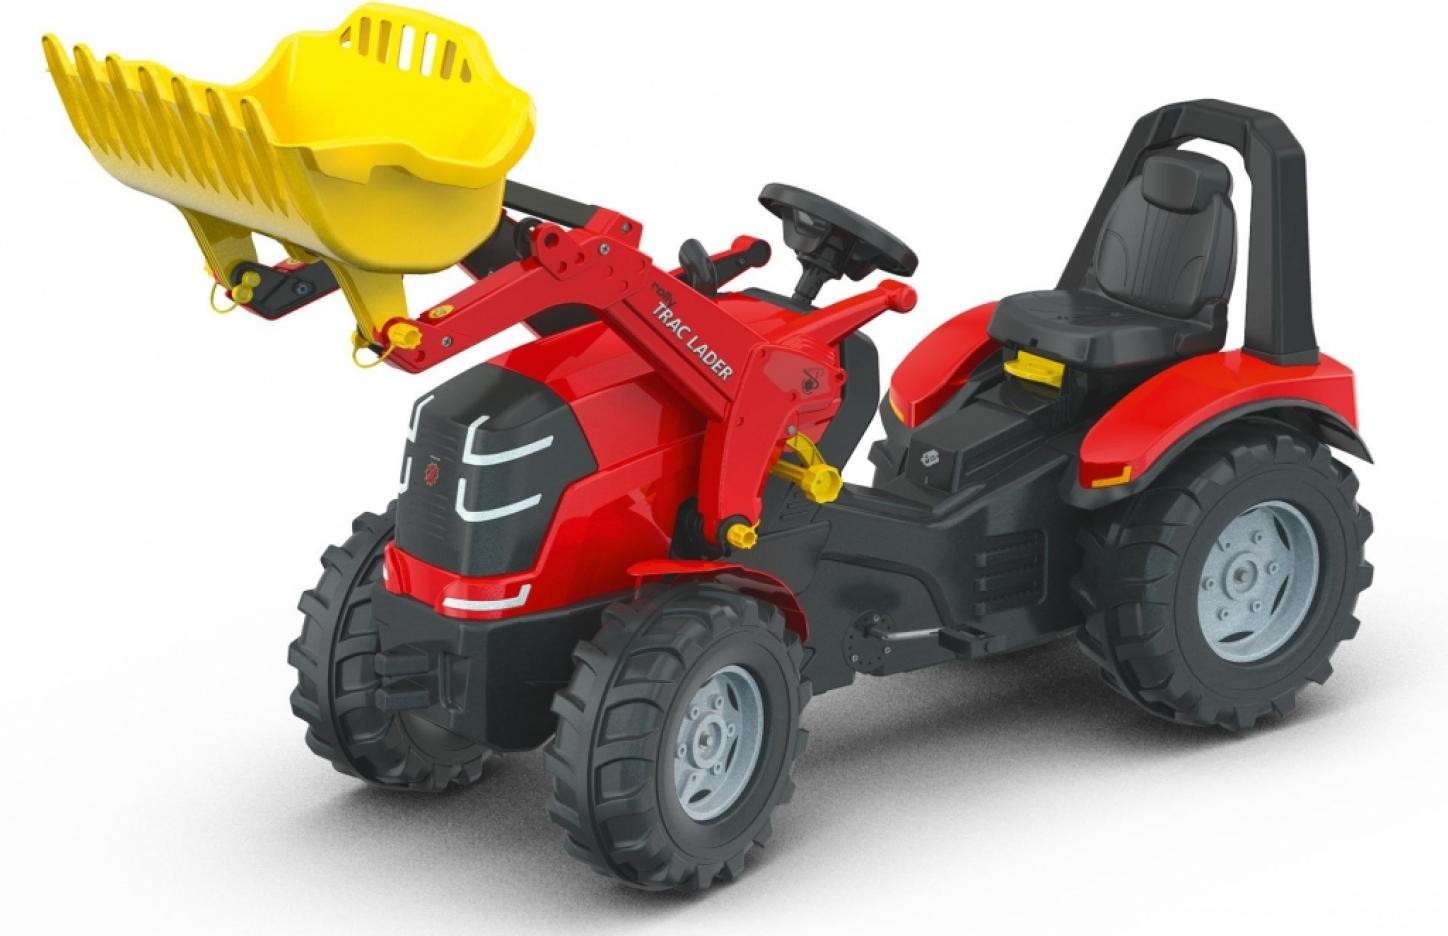 Трактор с ковшом RollyX-Trac Premium, Rolly Toys (красный)